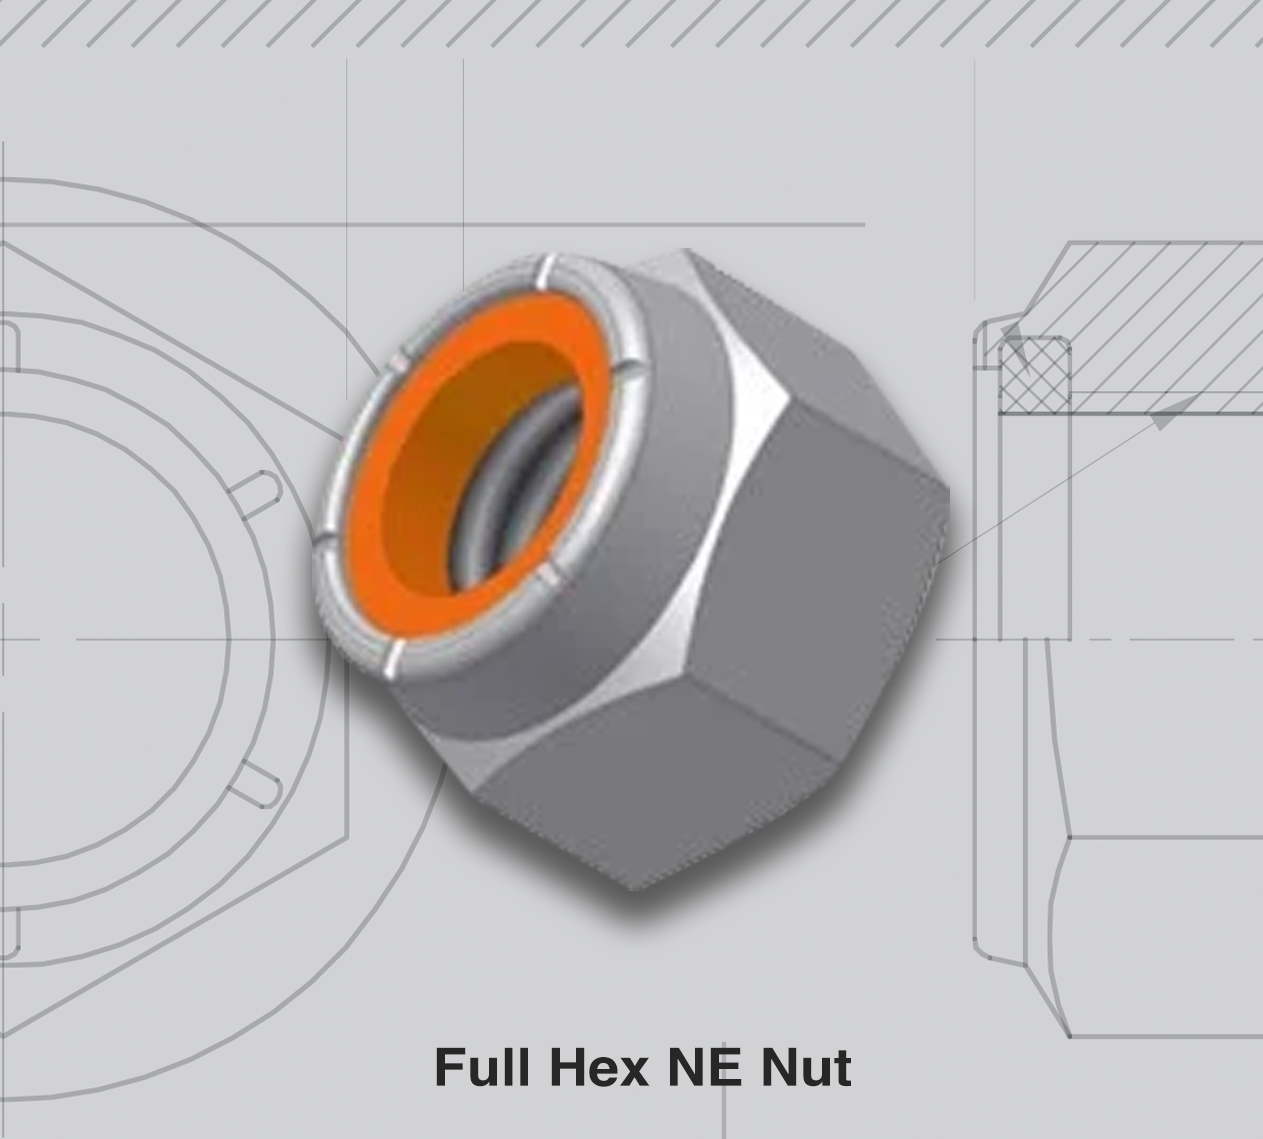 Full Hex NE Nut